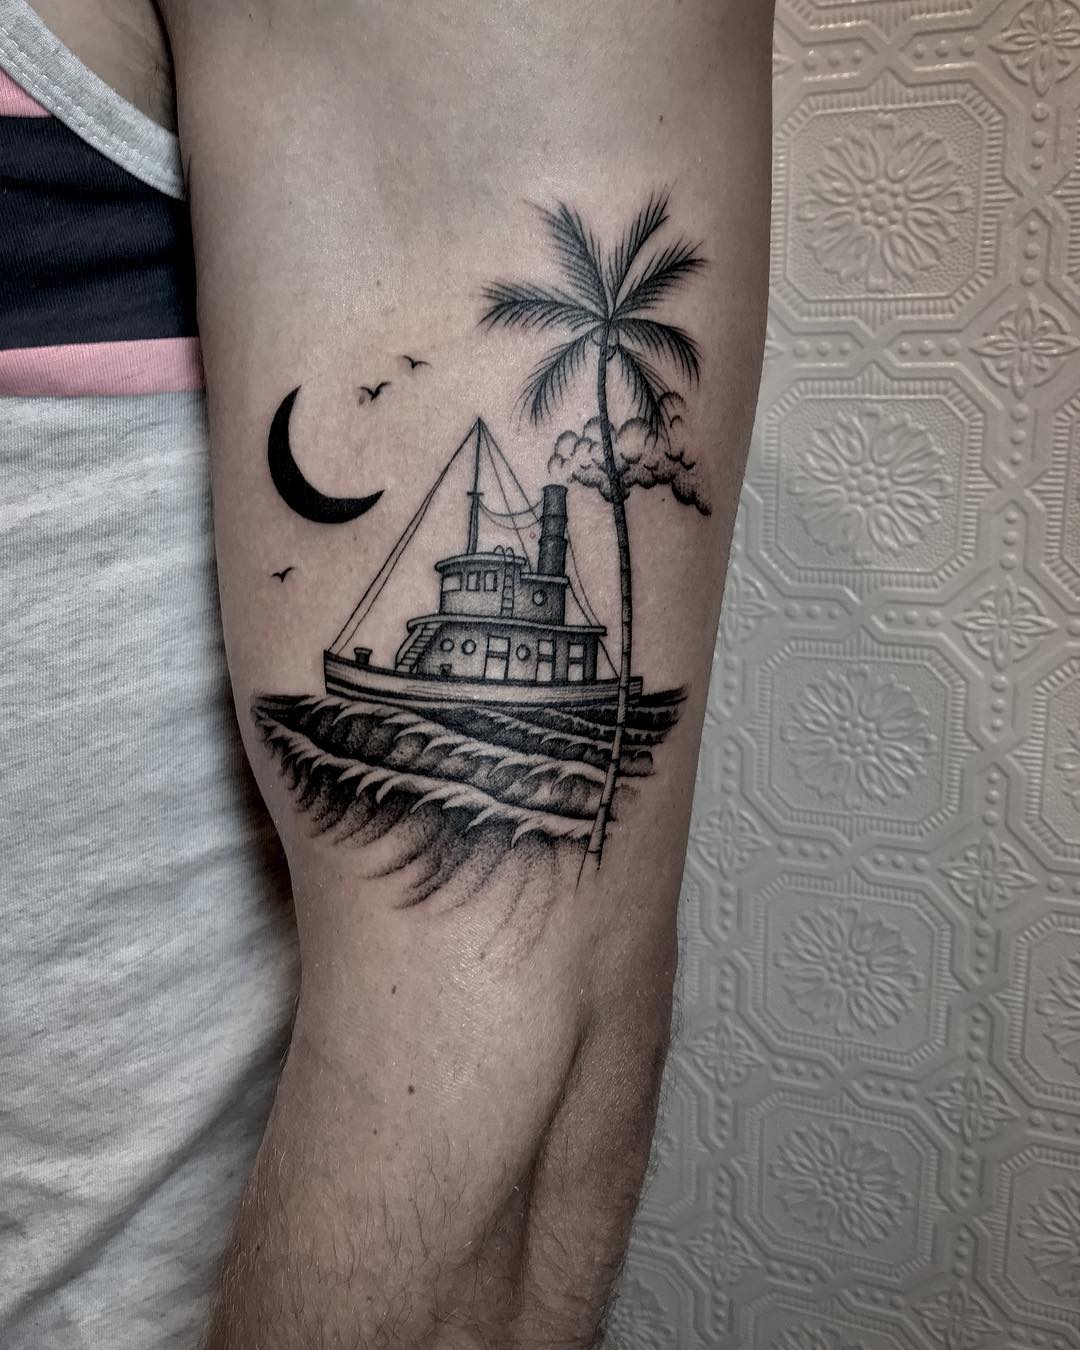 Tugboat tattoo by @justinoliviertattoo